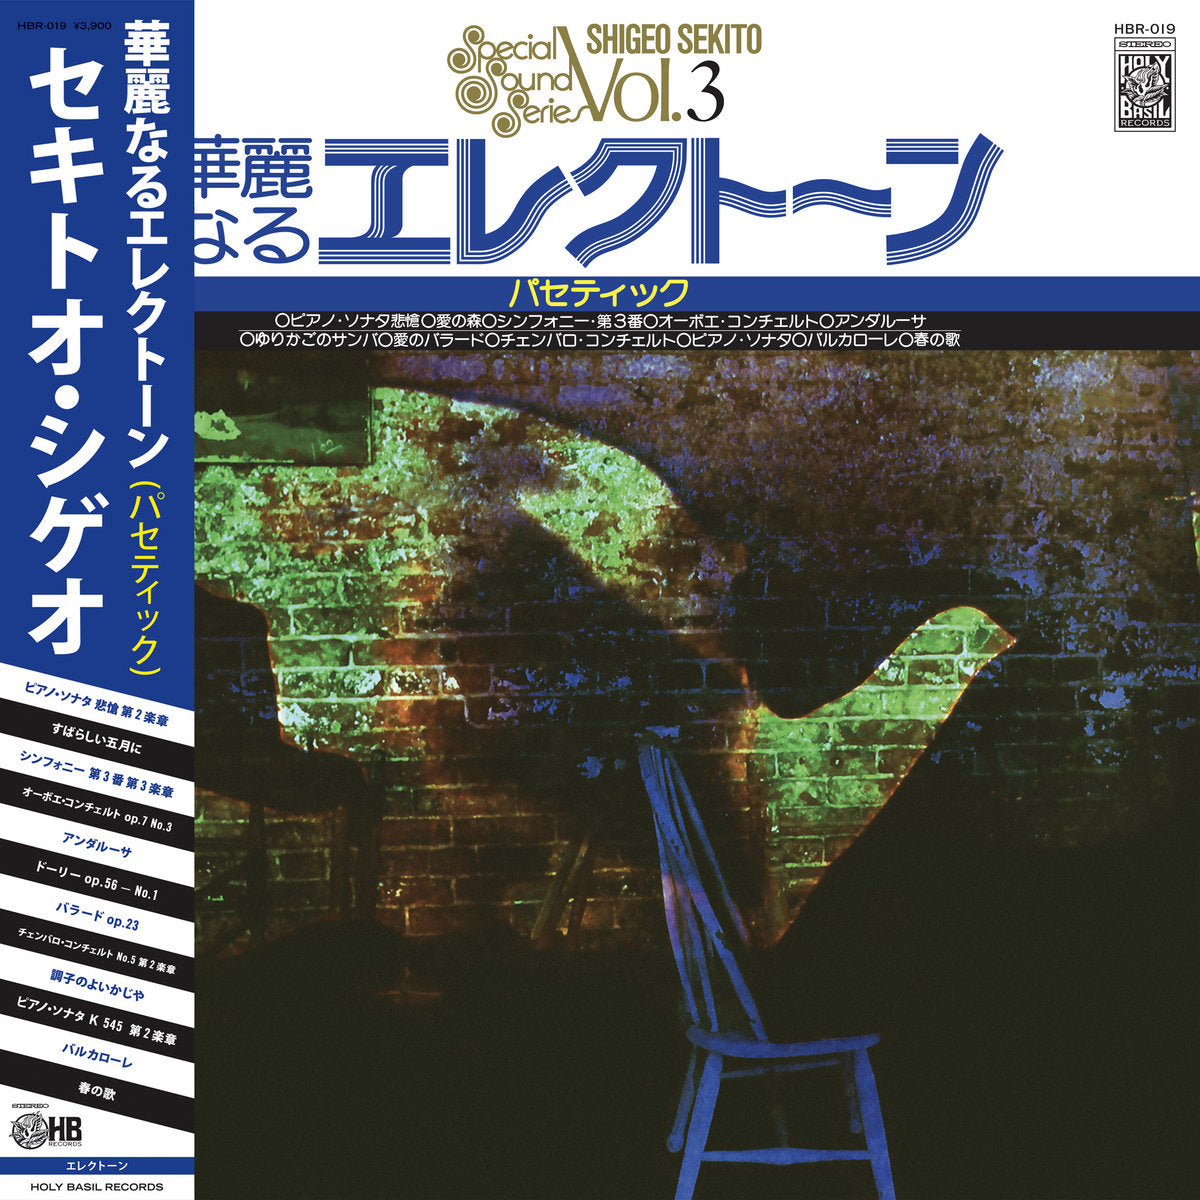 Shigeto Sekito - Special Sound V3